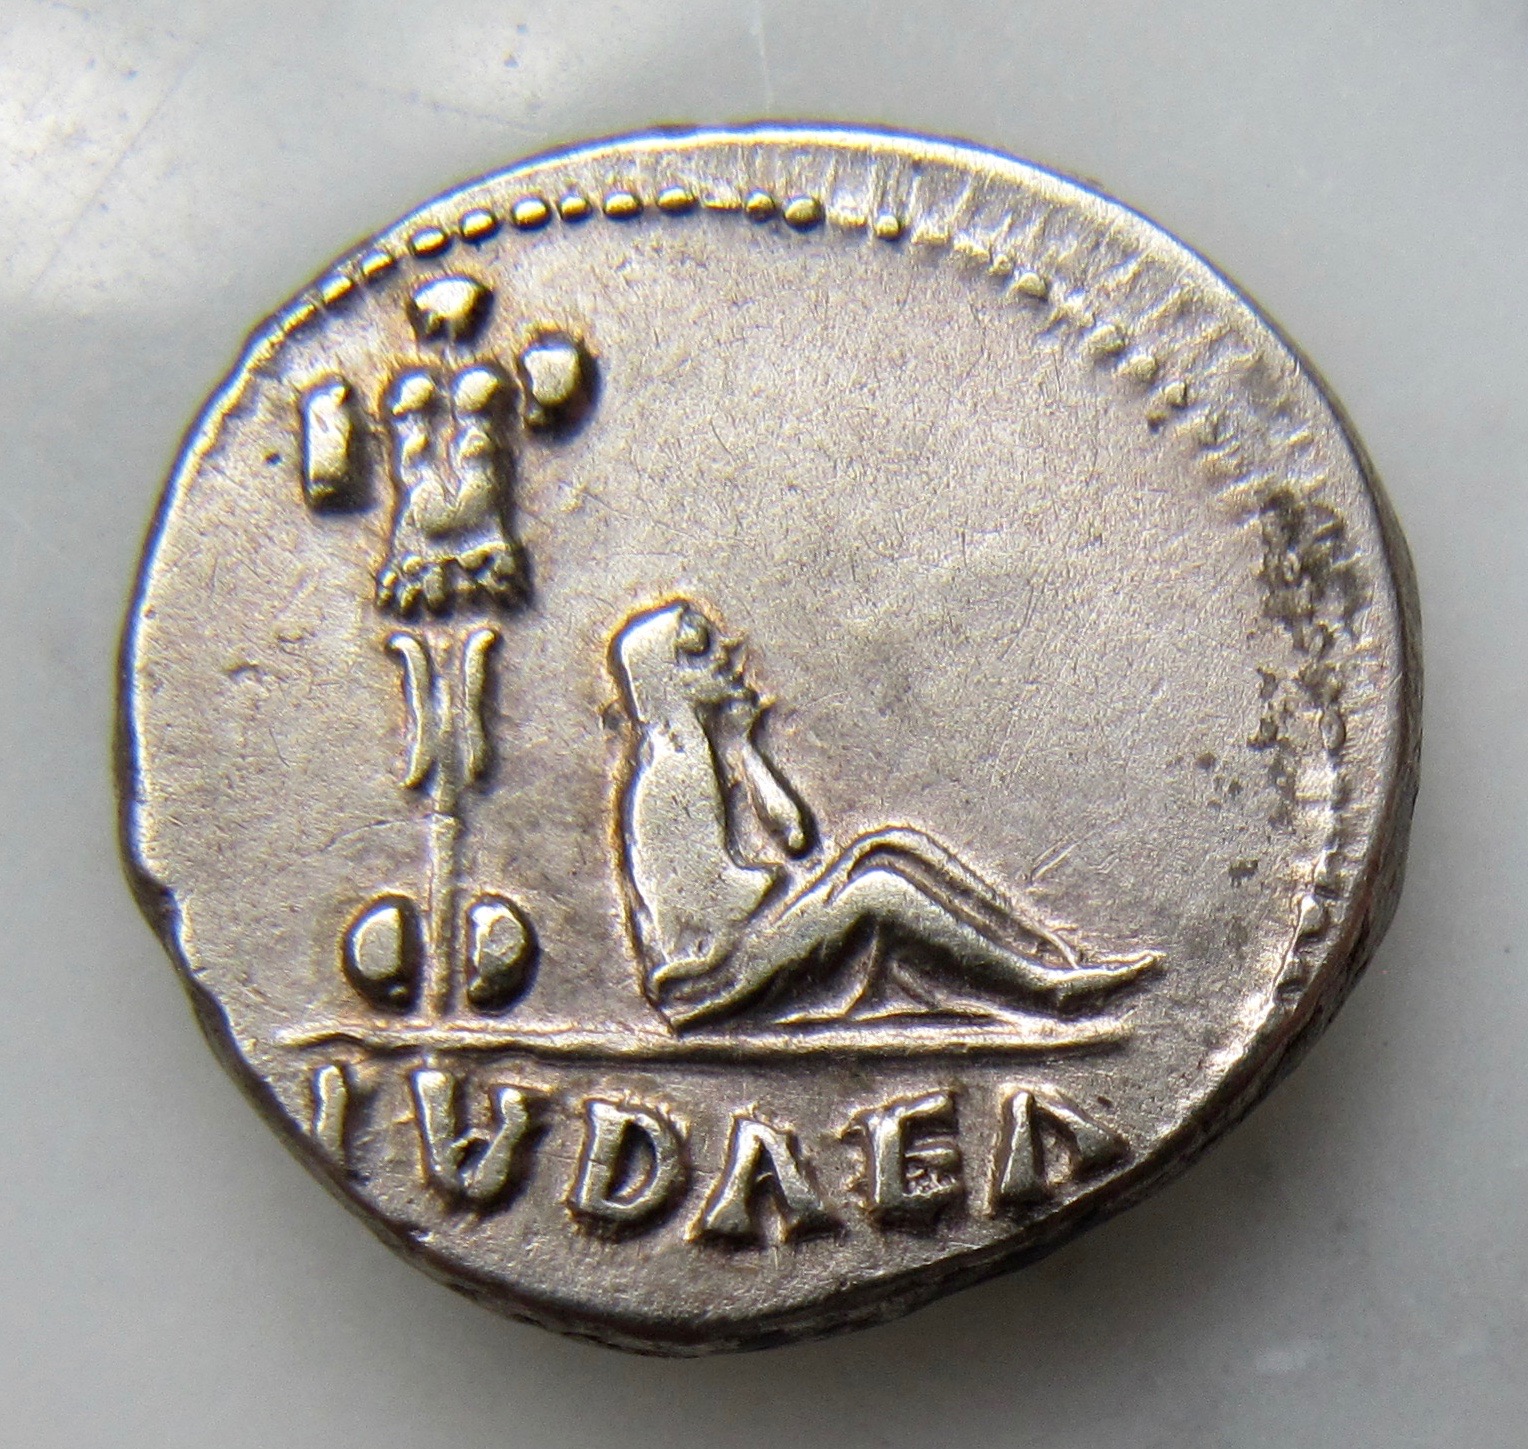 1st coin of 2018-Rare Vespasian denarius | Coin Talk